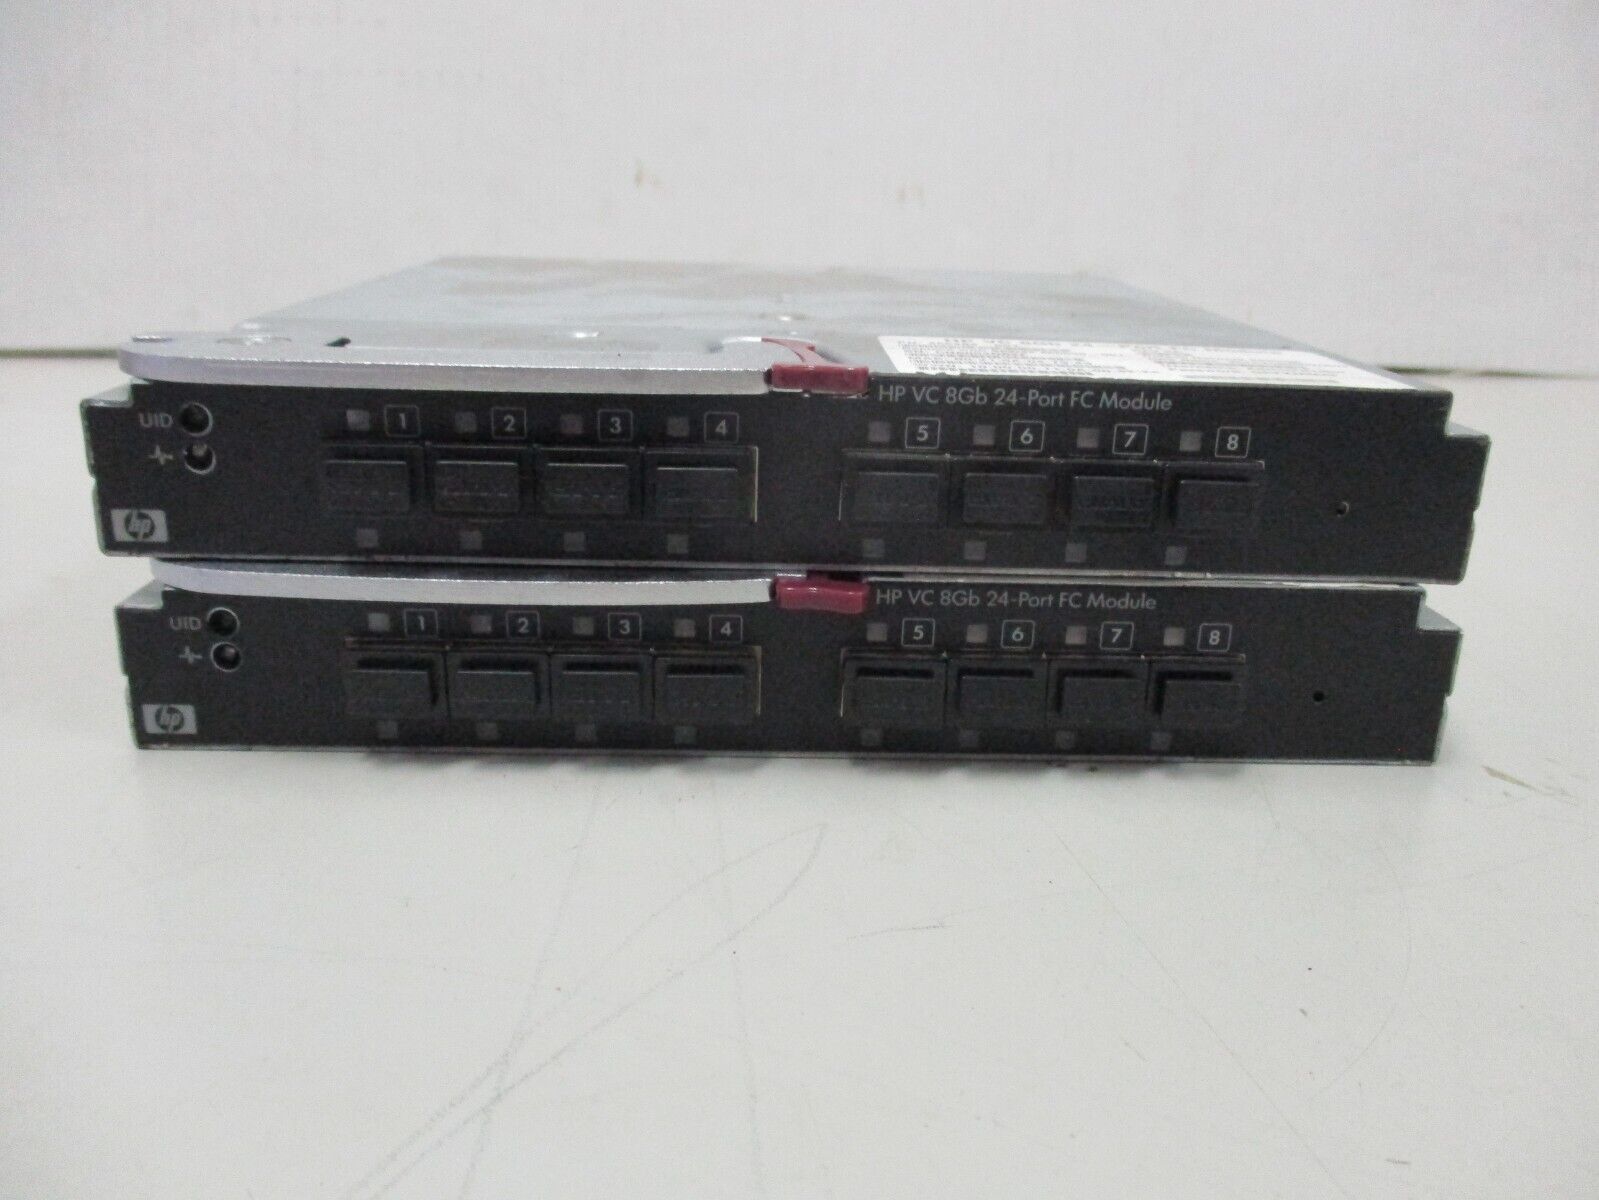 2 HP 266484-001 VC 8Gb 24-Port FC Modules